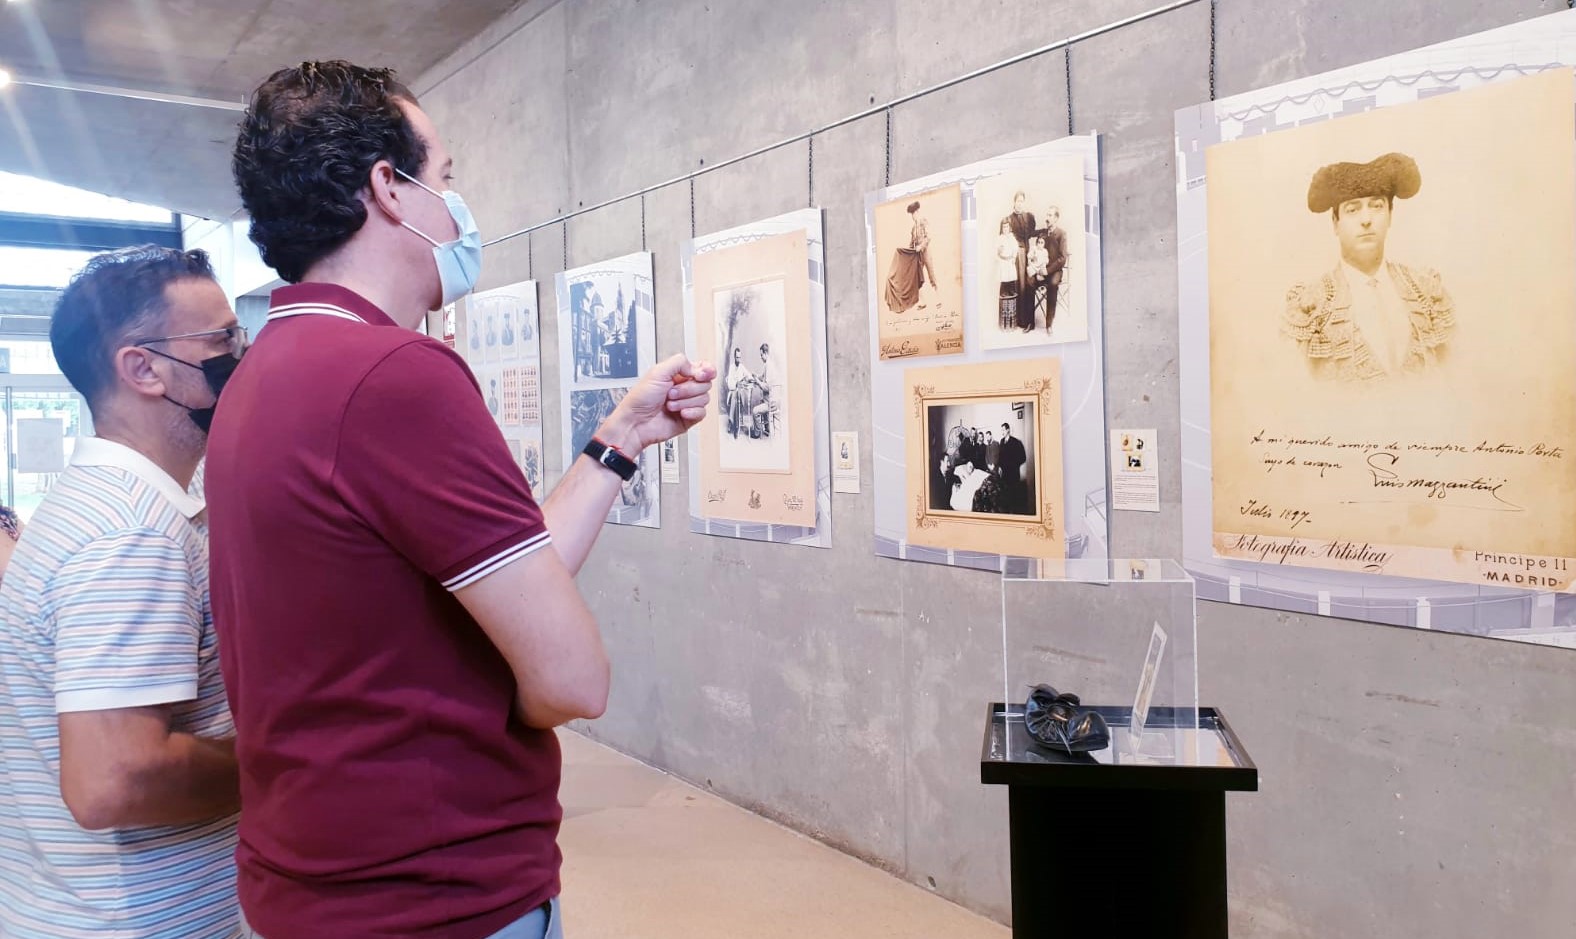 El Museo del Calzado acoge una muestra fotográfica que realiza un recorrido por los 75 años de historia de la Plaza de Toros de Elda